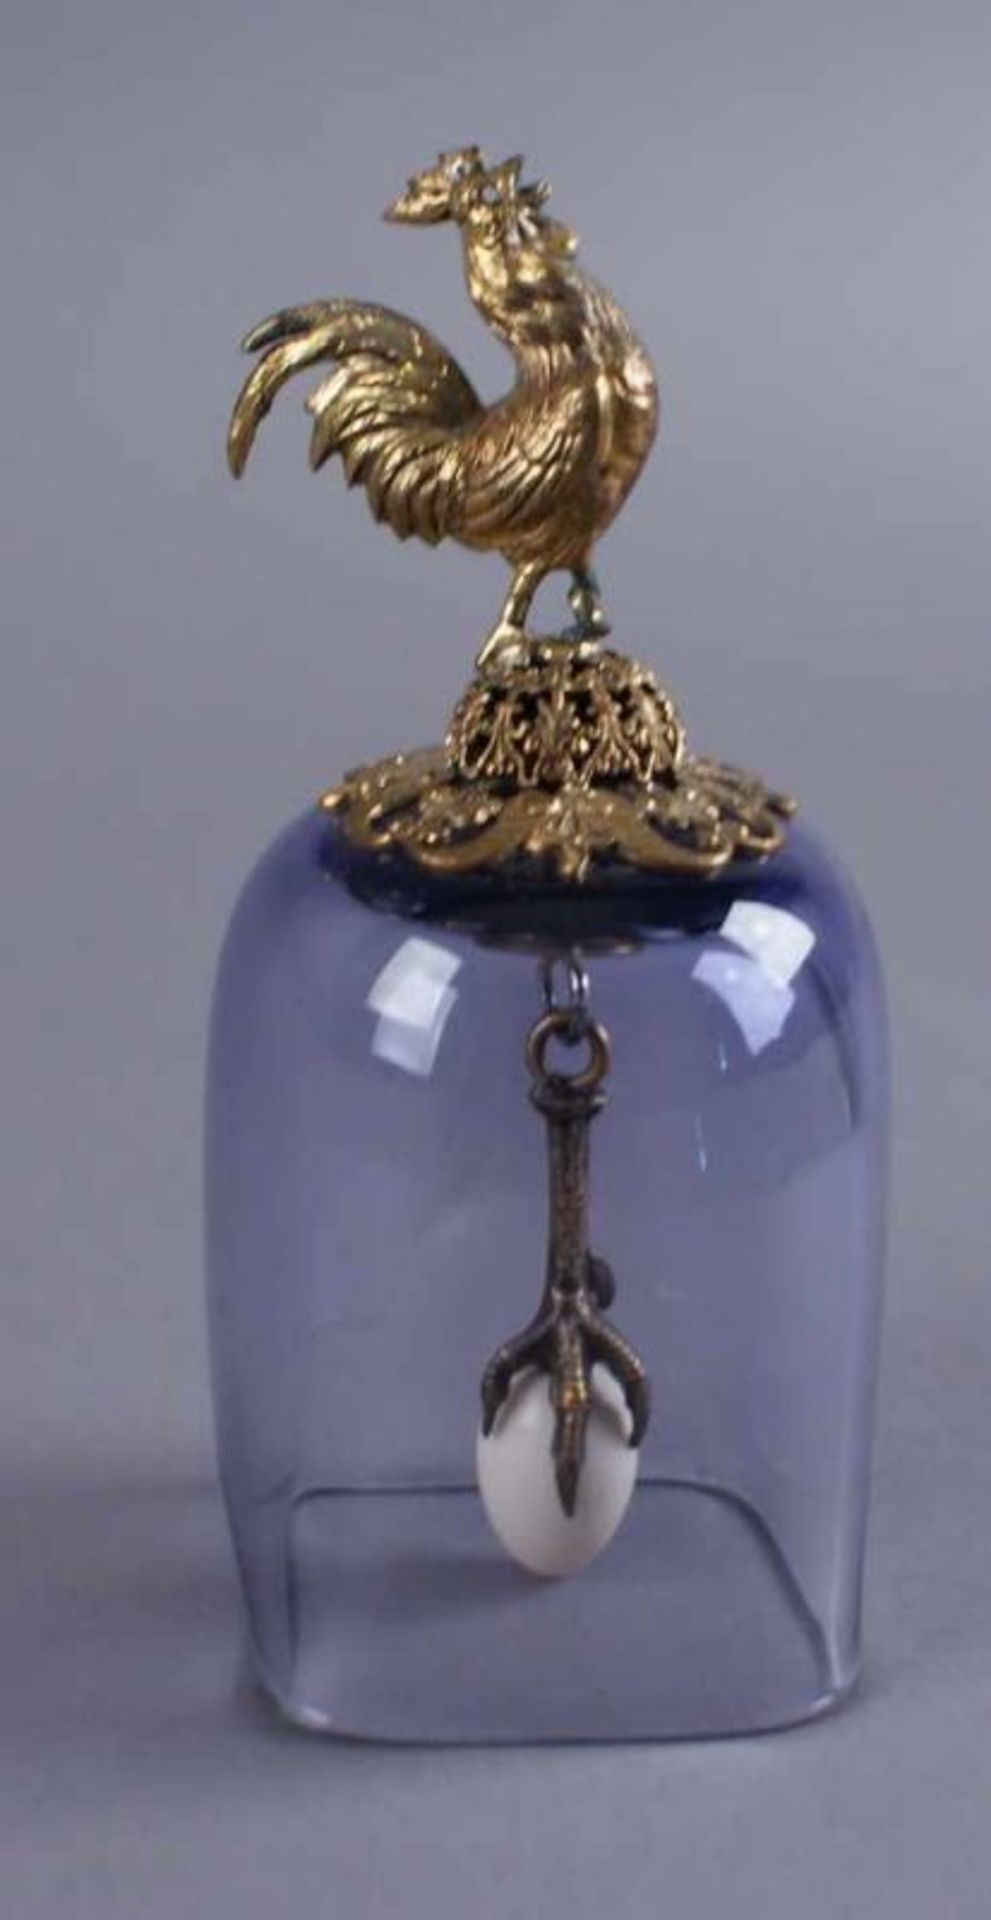 Glocke, Wien, violette Glaskuppel mit aufsitzendem Bronzehahn, im Inneren eine Gockelfuß mit Ei, - Bild 2 aus 6